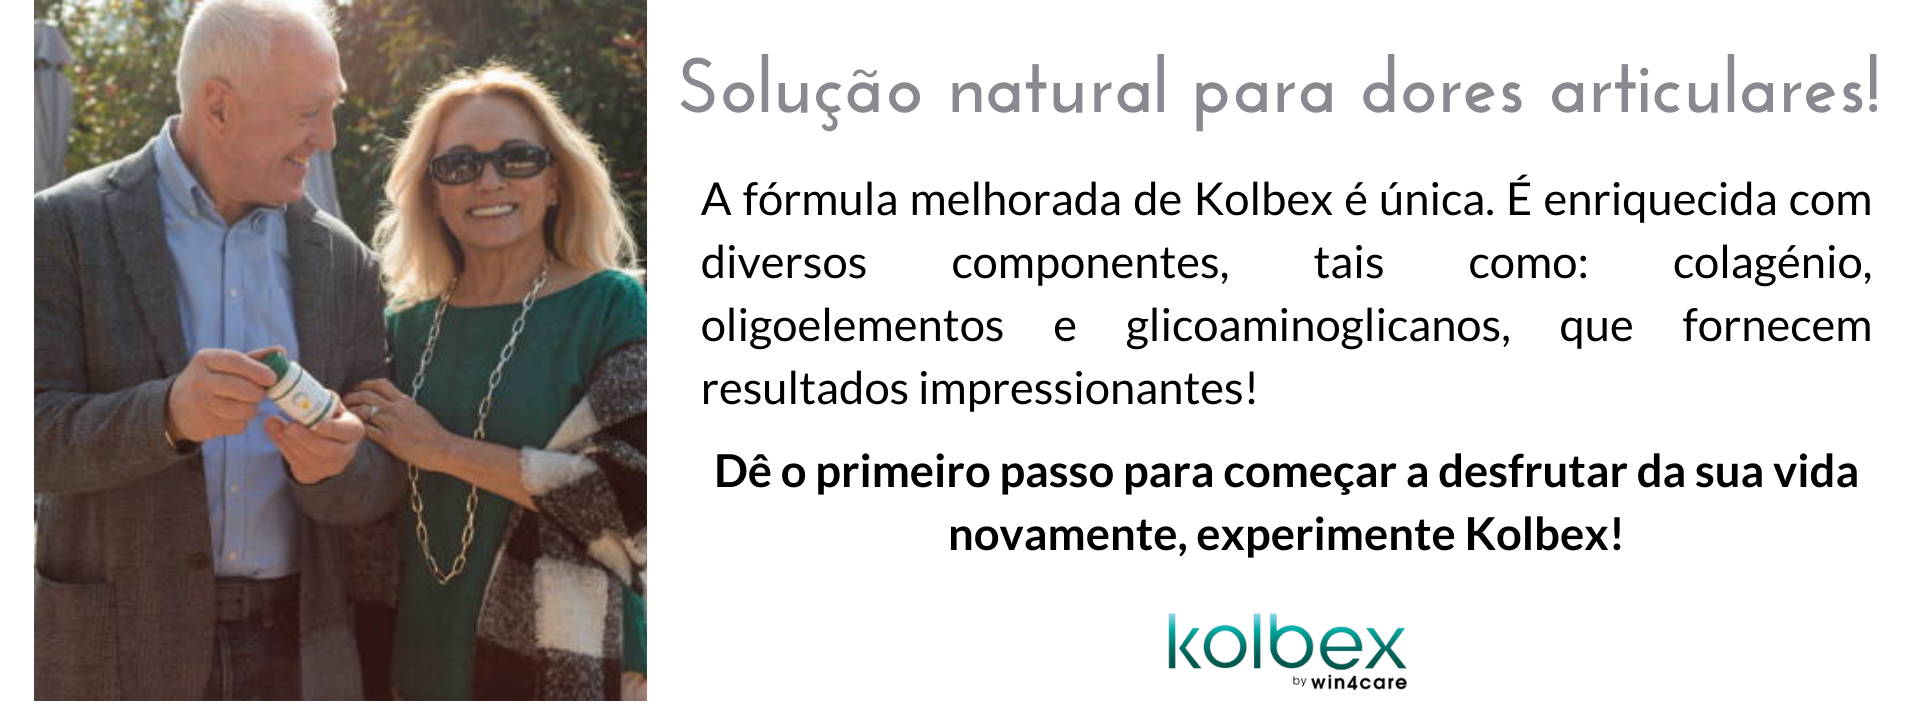 Kolbex é uma solução natural para dores articulares!